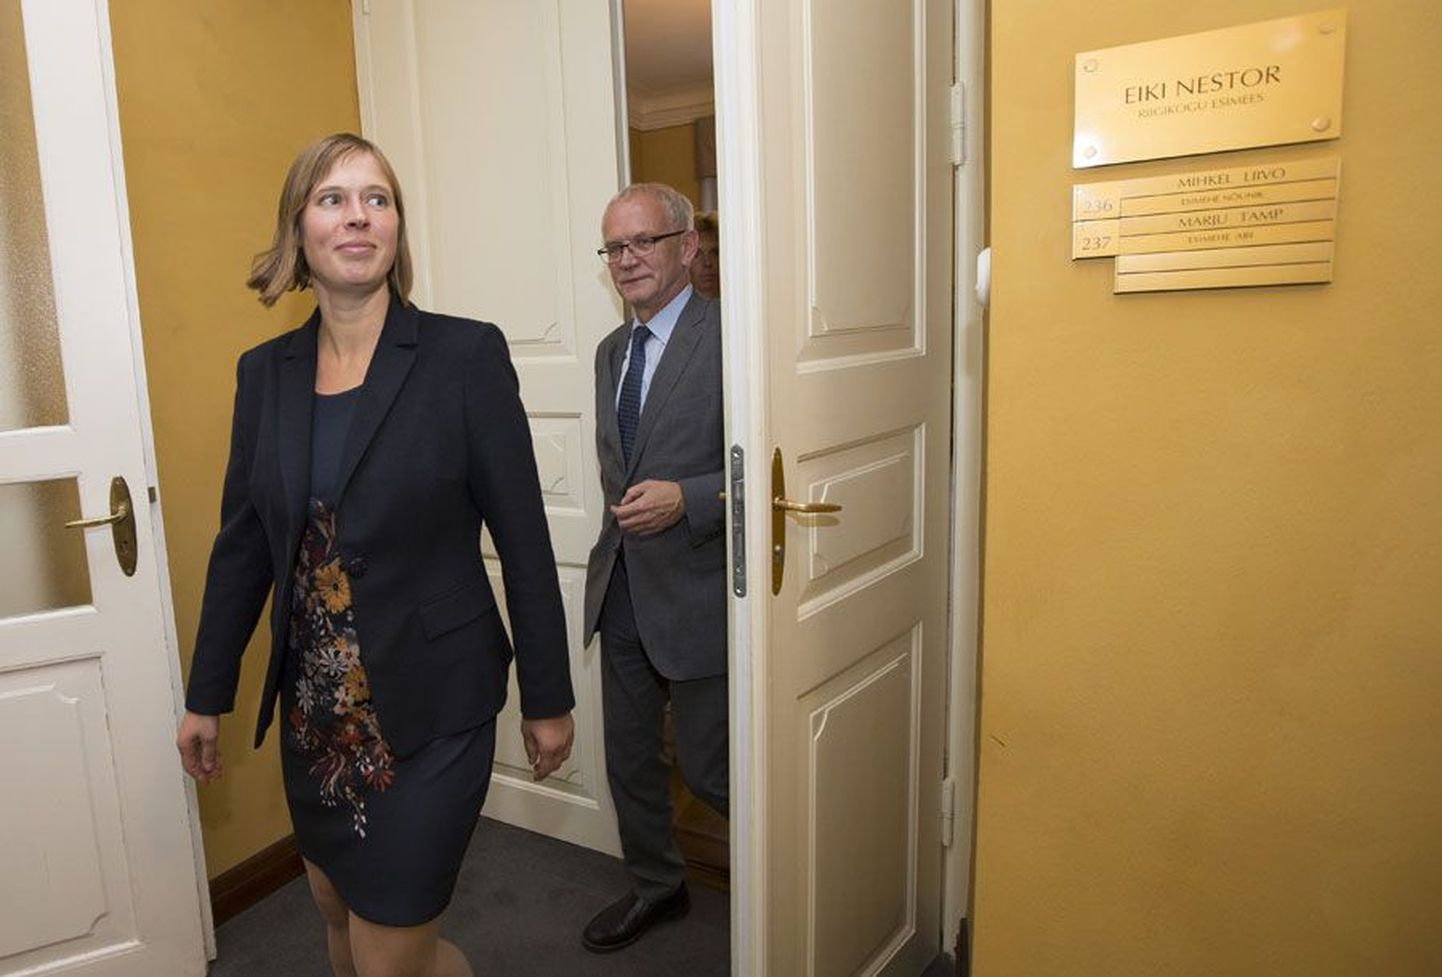 Riigikogu esimehest Eiki Nestorist sai presidenditegija pärast ebaõnnestunud valimiskogu, kui ta tõi välja erakondadelt suure toetuse saanud Kersti Kaljulaidi.